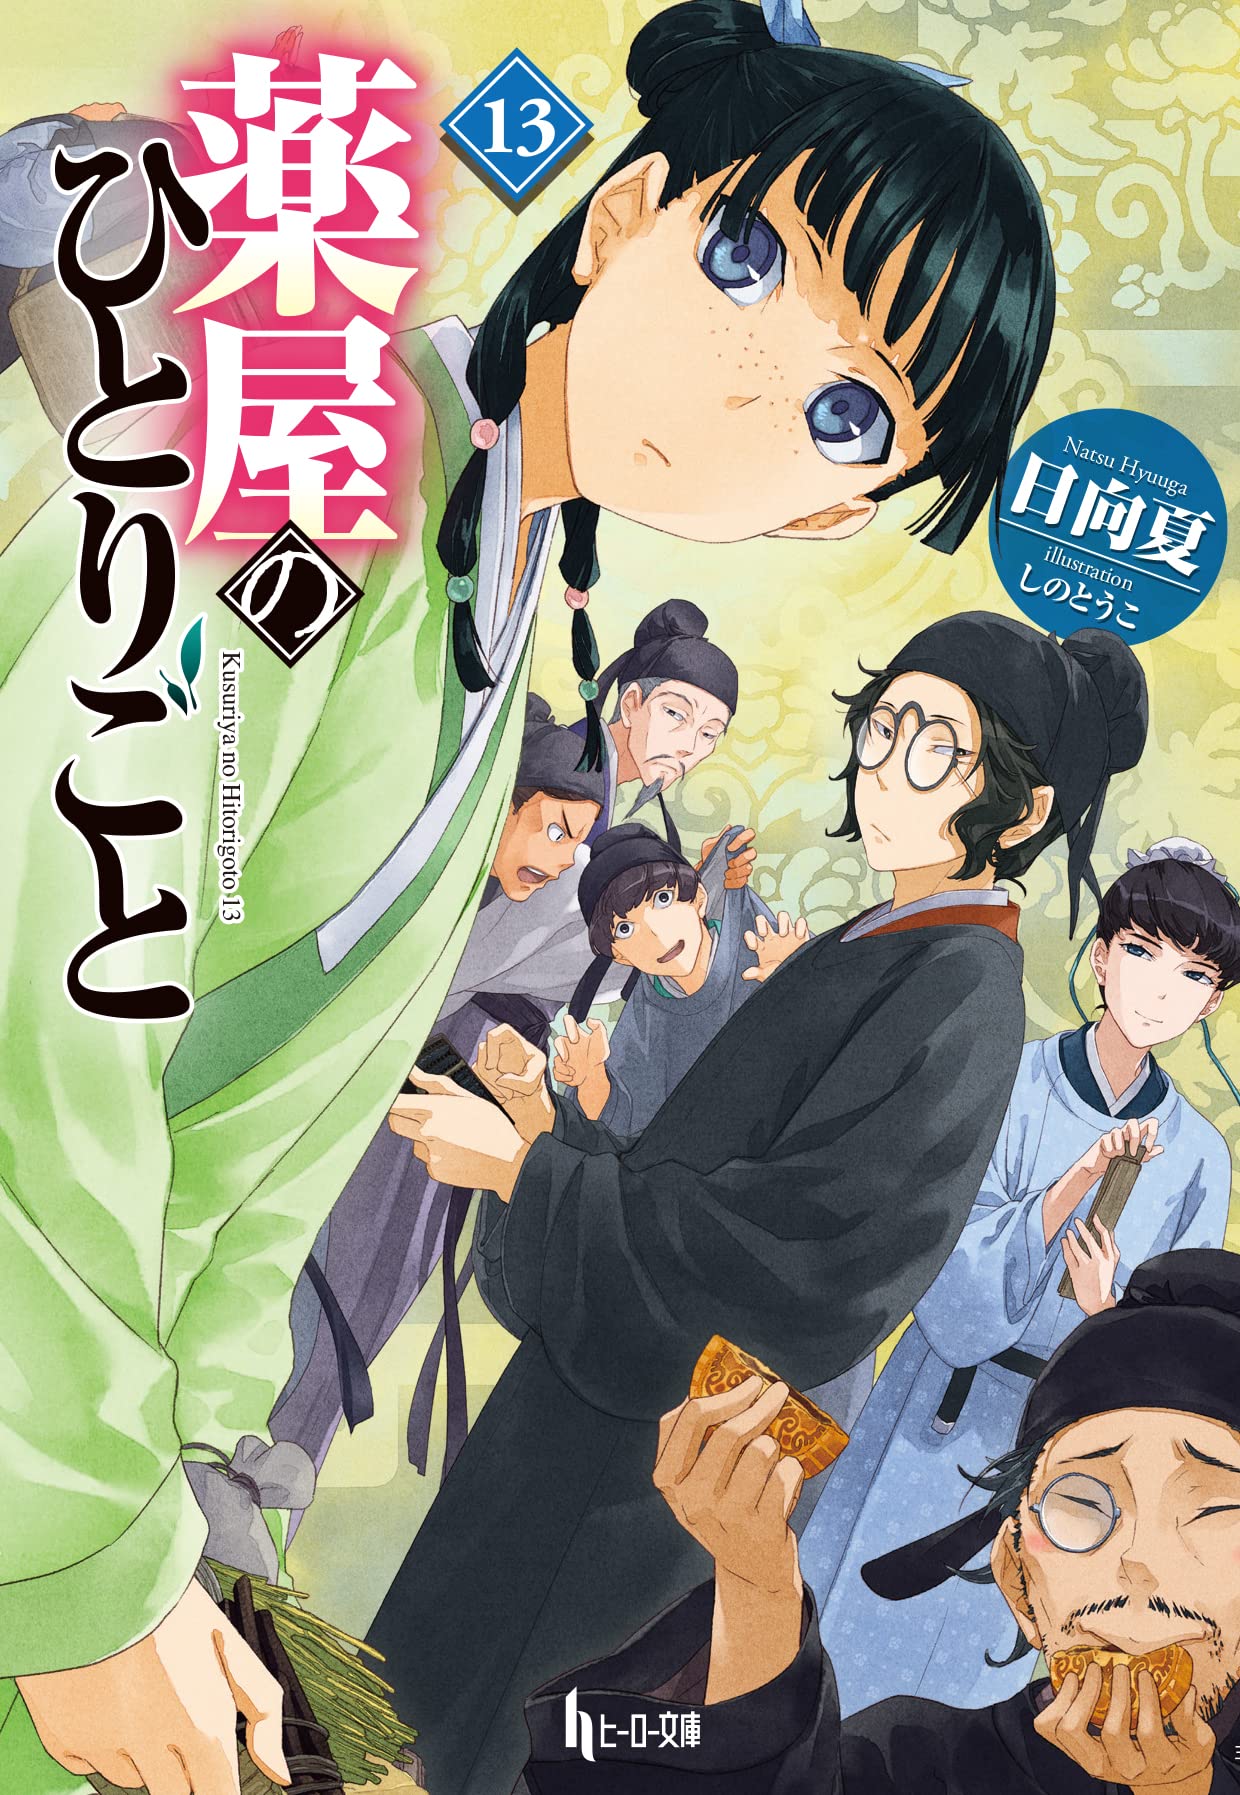 Kusuriya no Hitorigoto - Episódio 1 - Animes Online